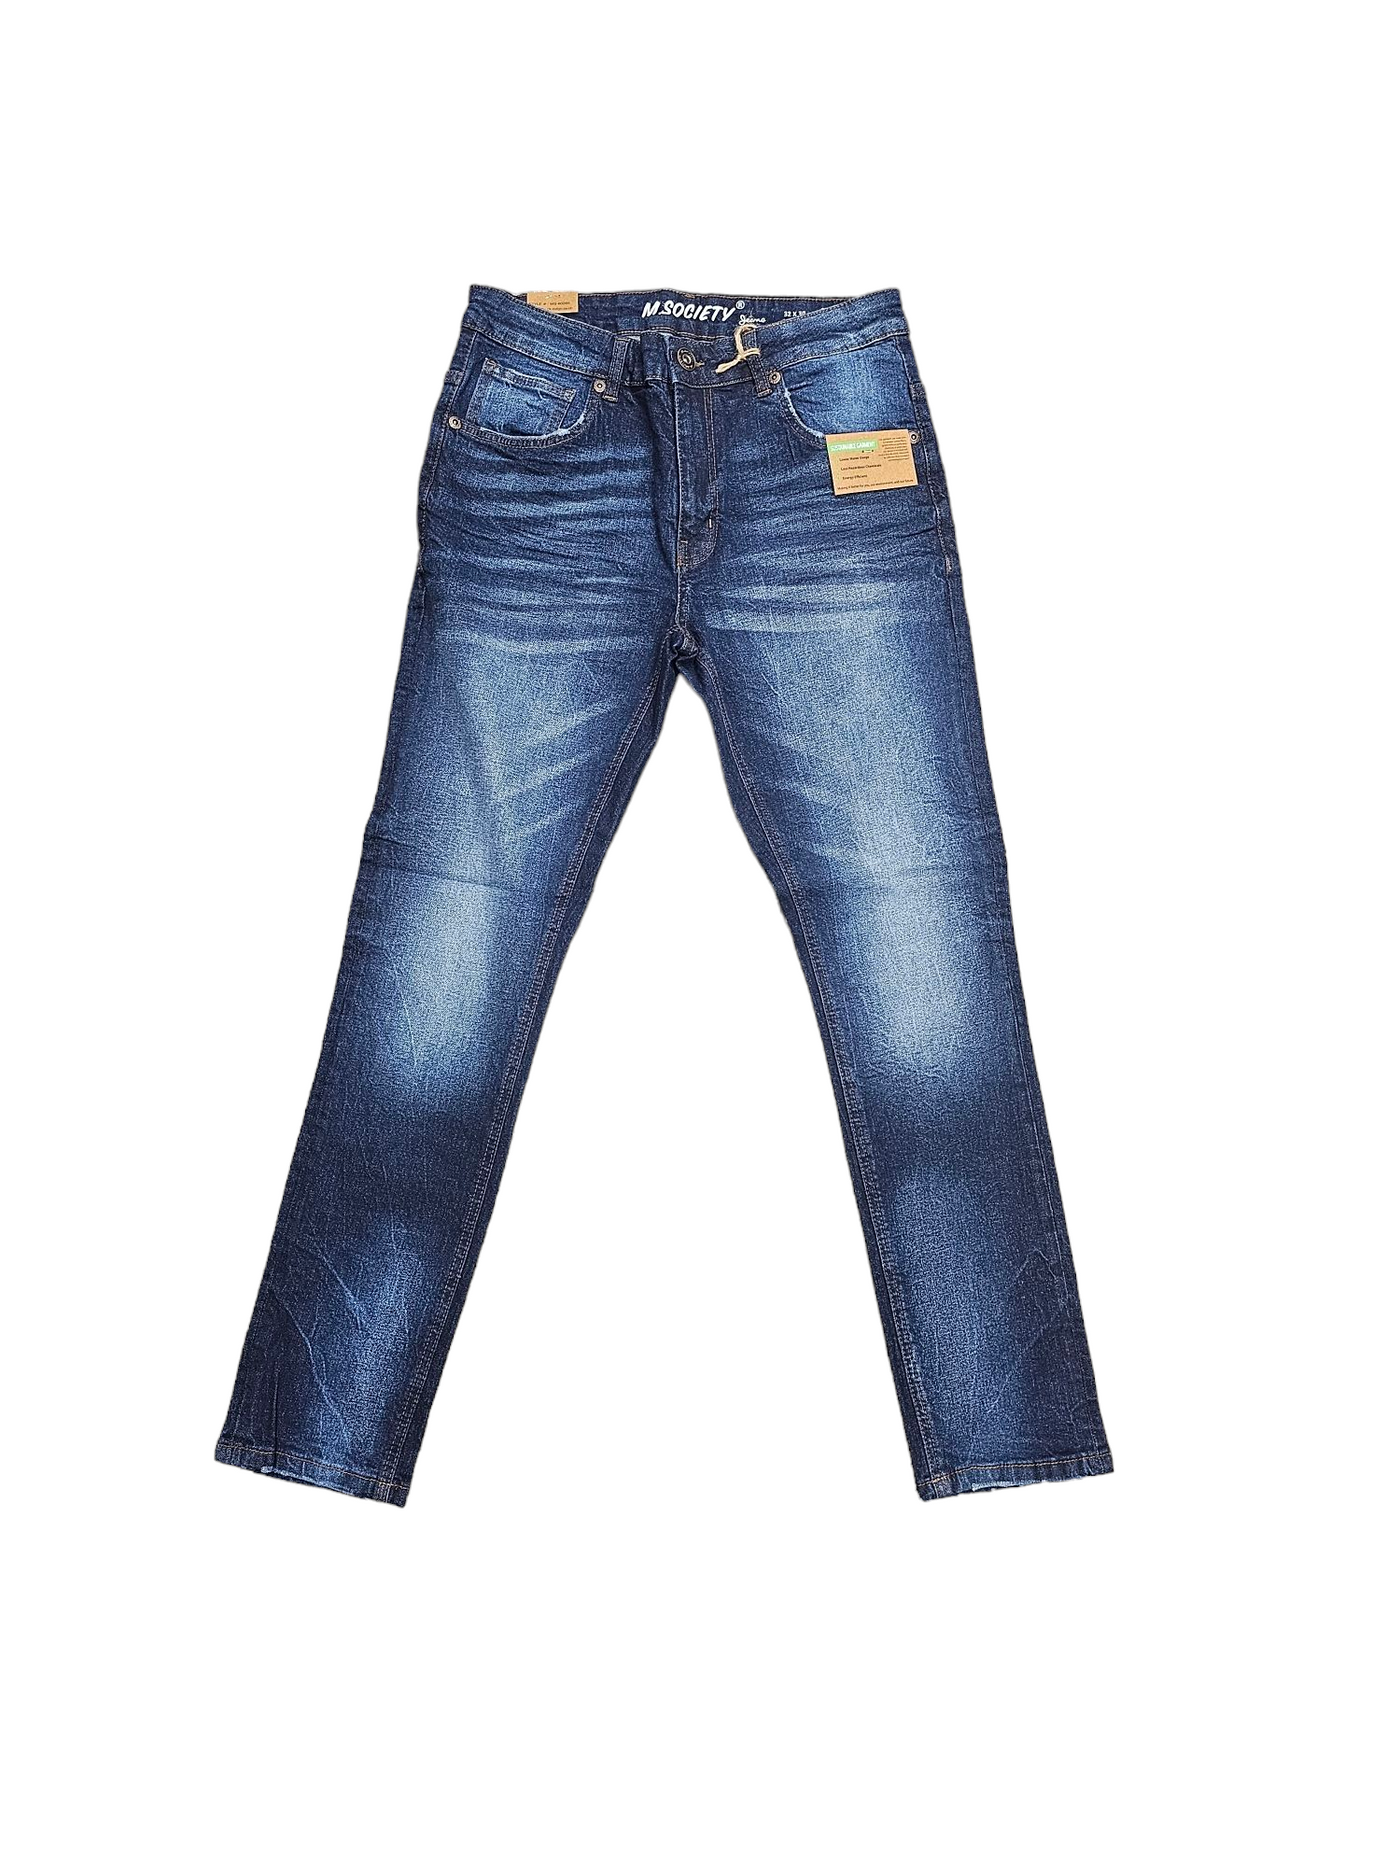 M. Society Men's Stretched Denim Jeans Dark Indigo MS-80260